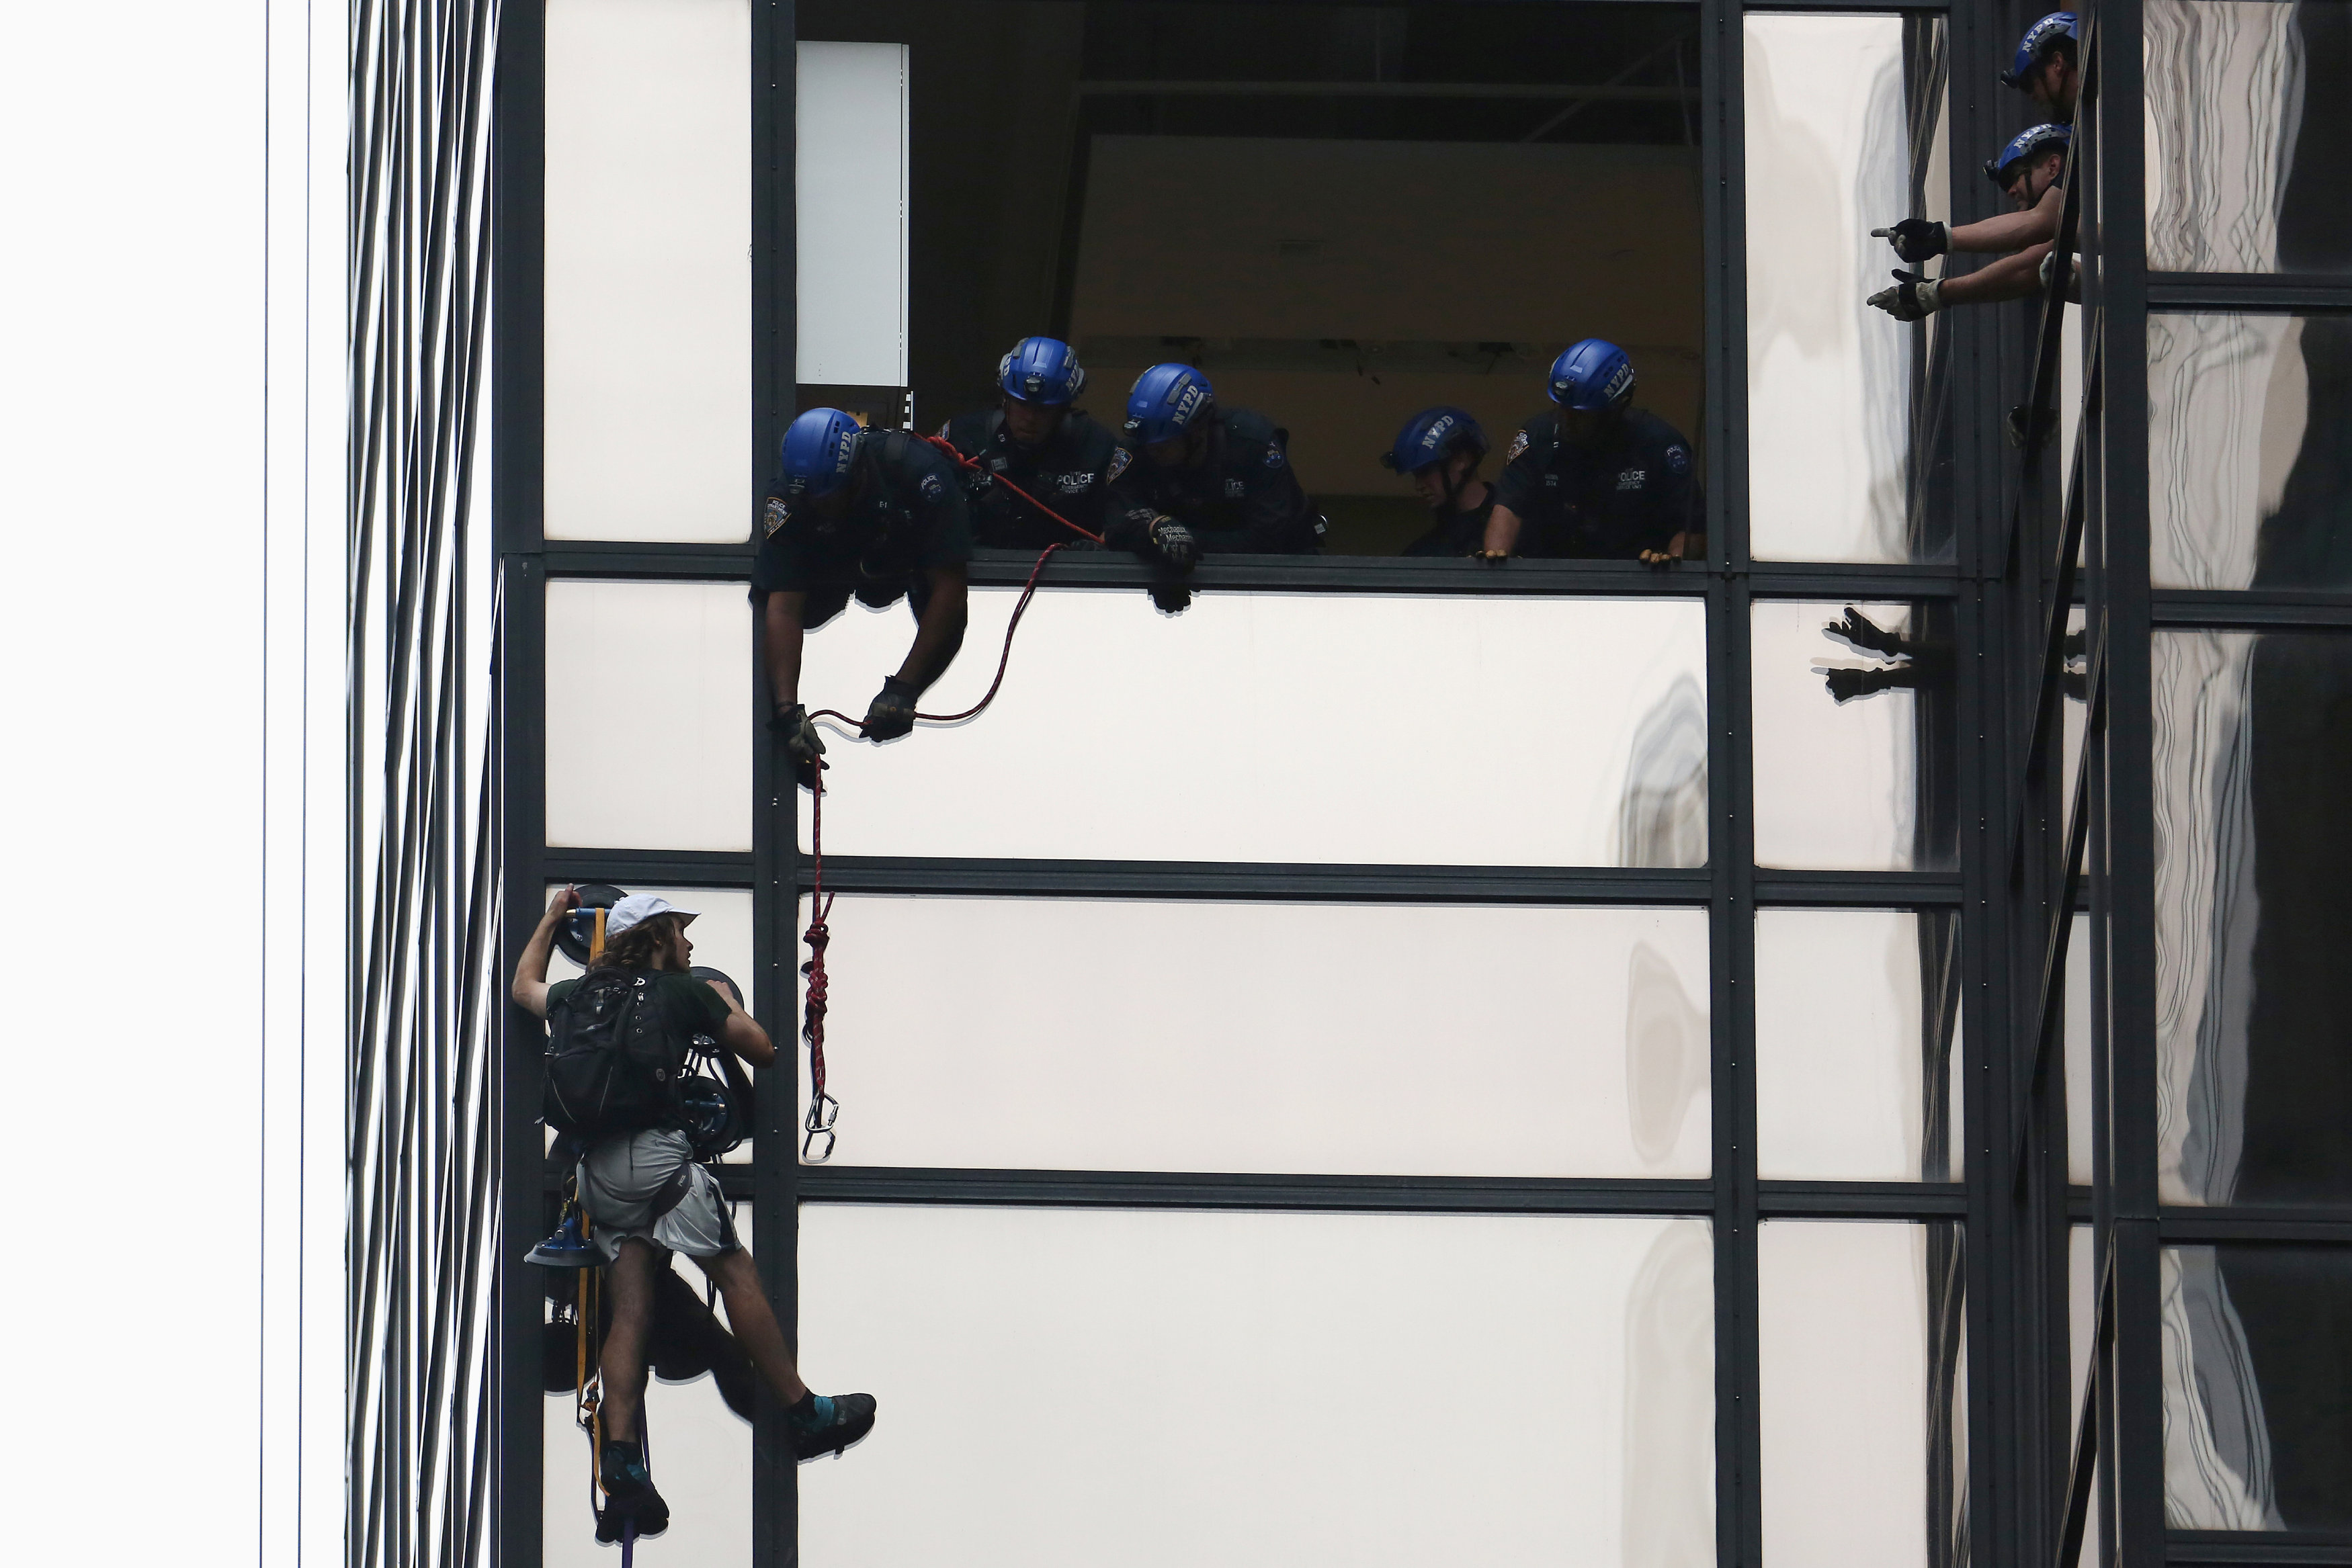 Detienen al escalador que ascendía la torre Trump en Nueva York (Fotos)